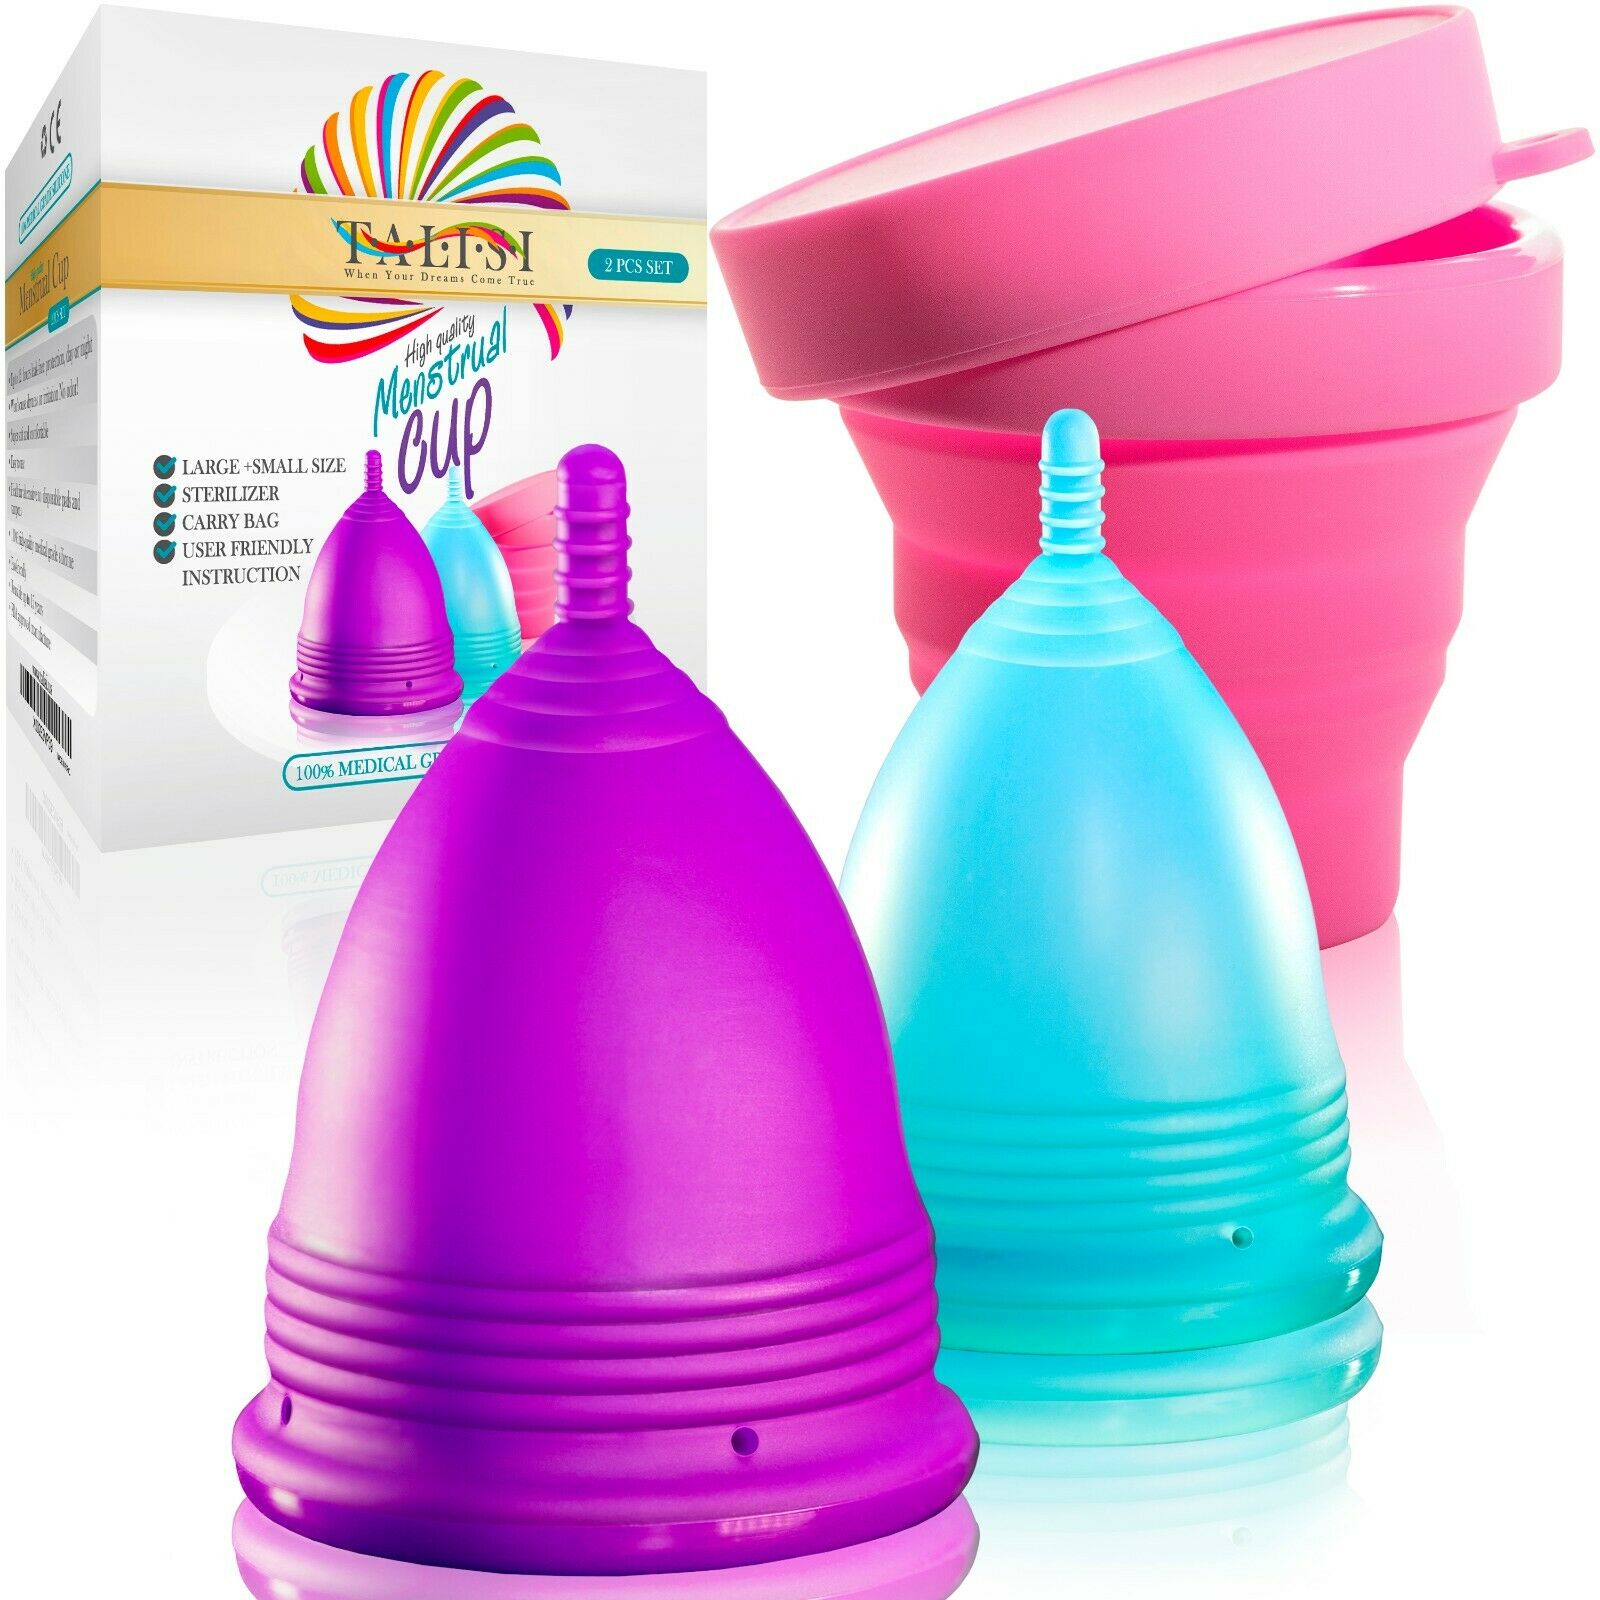 Talisi Menstrual Cup Set Large Small & Silicone Period Copa Sterilizer Feminine